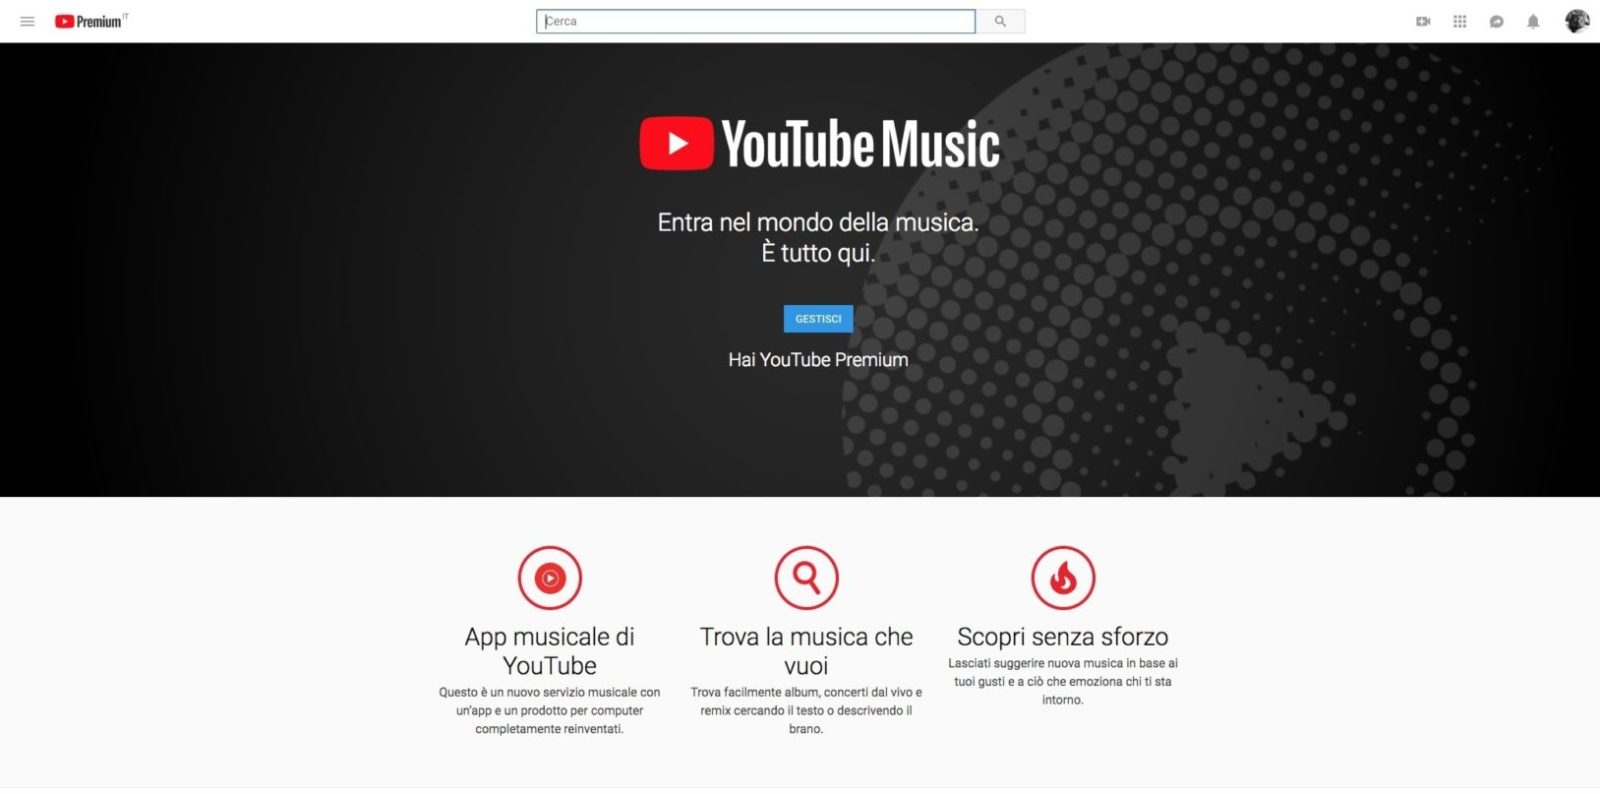 YouTube Music, l’abbiamo testato: ecco perchè è meglio di Spotify e Apple Music